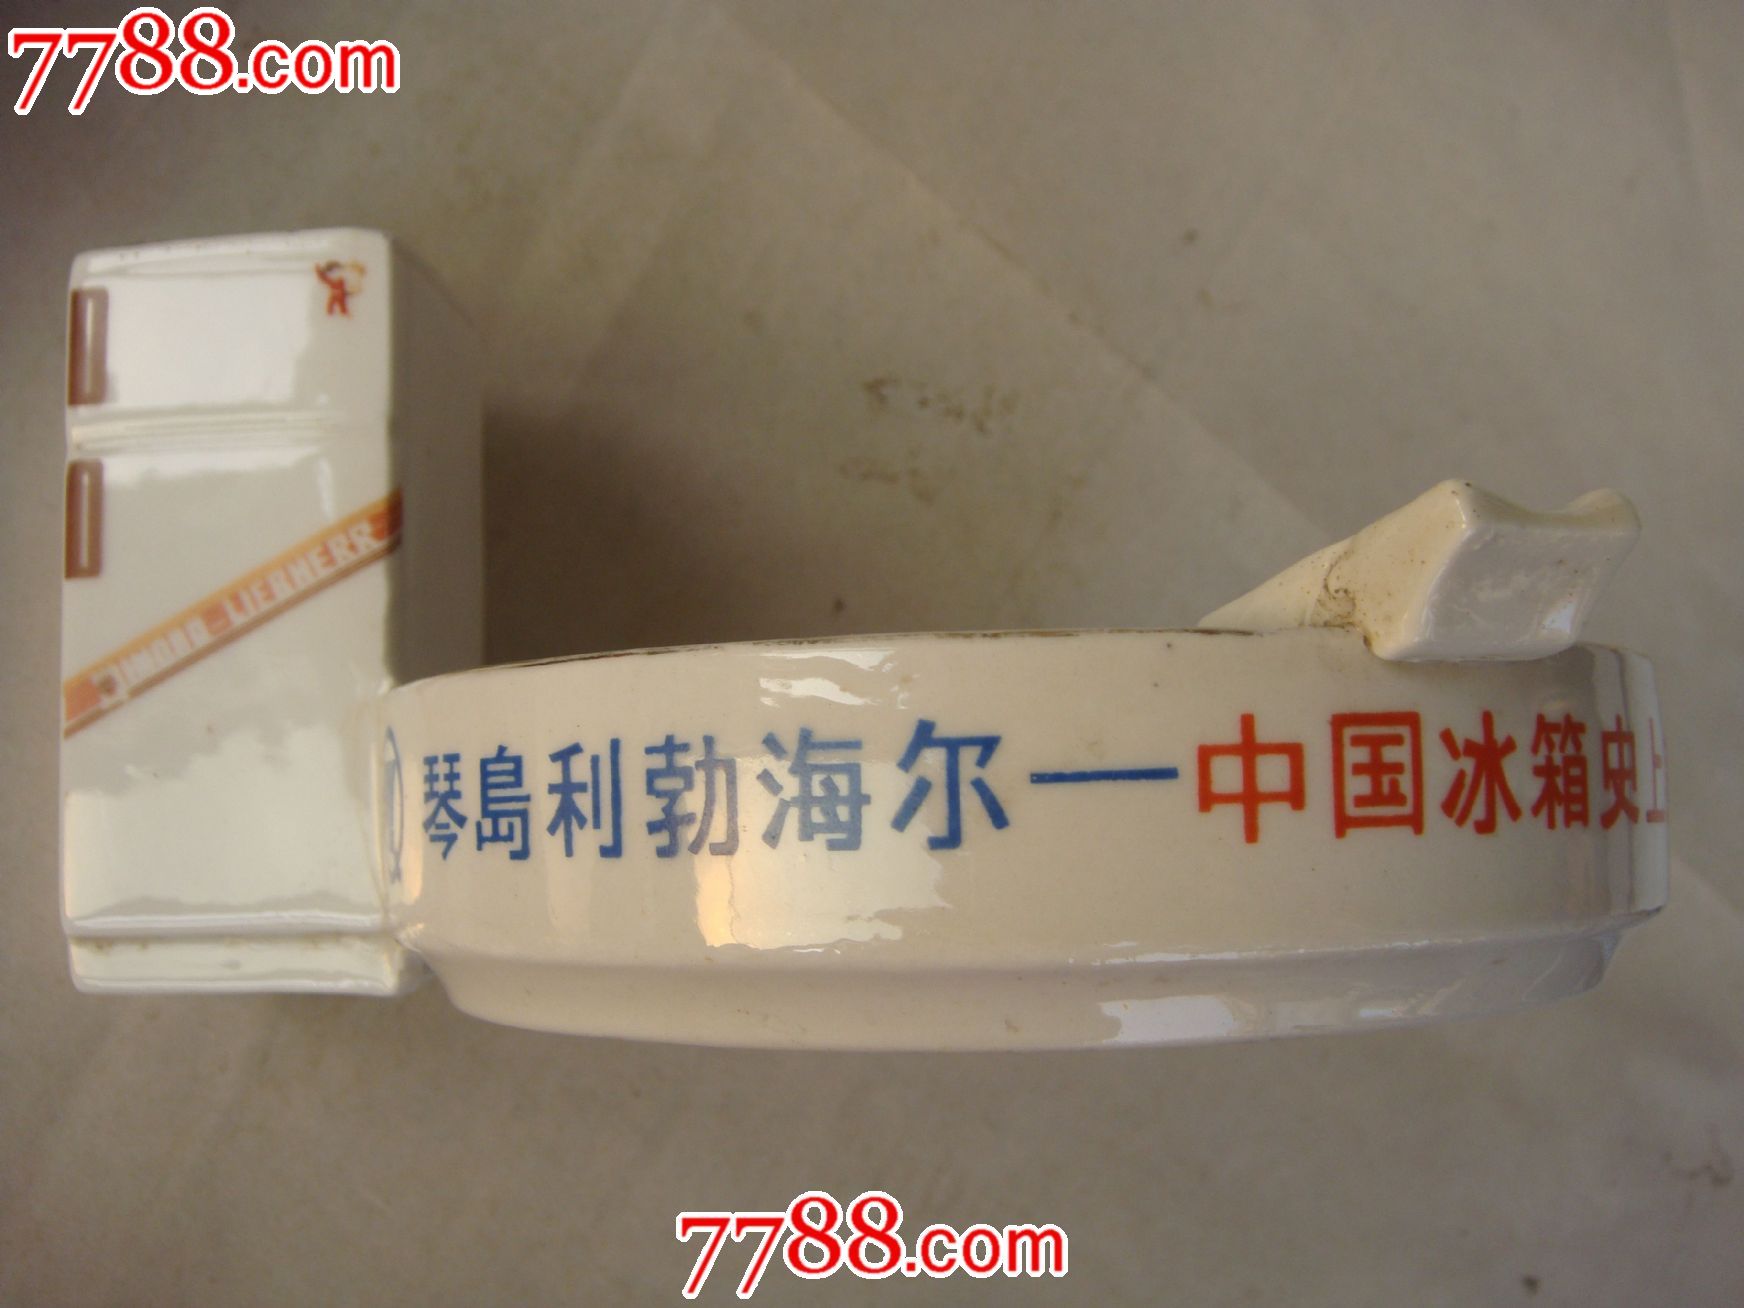 80年代末,淄博瓷厂【琴岛利勃海尔―中国冰箱史上第一